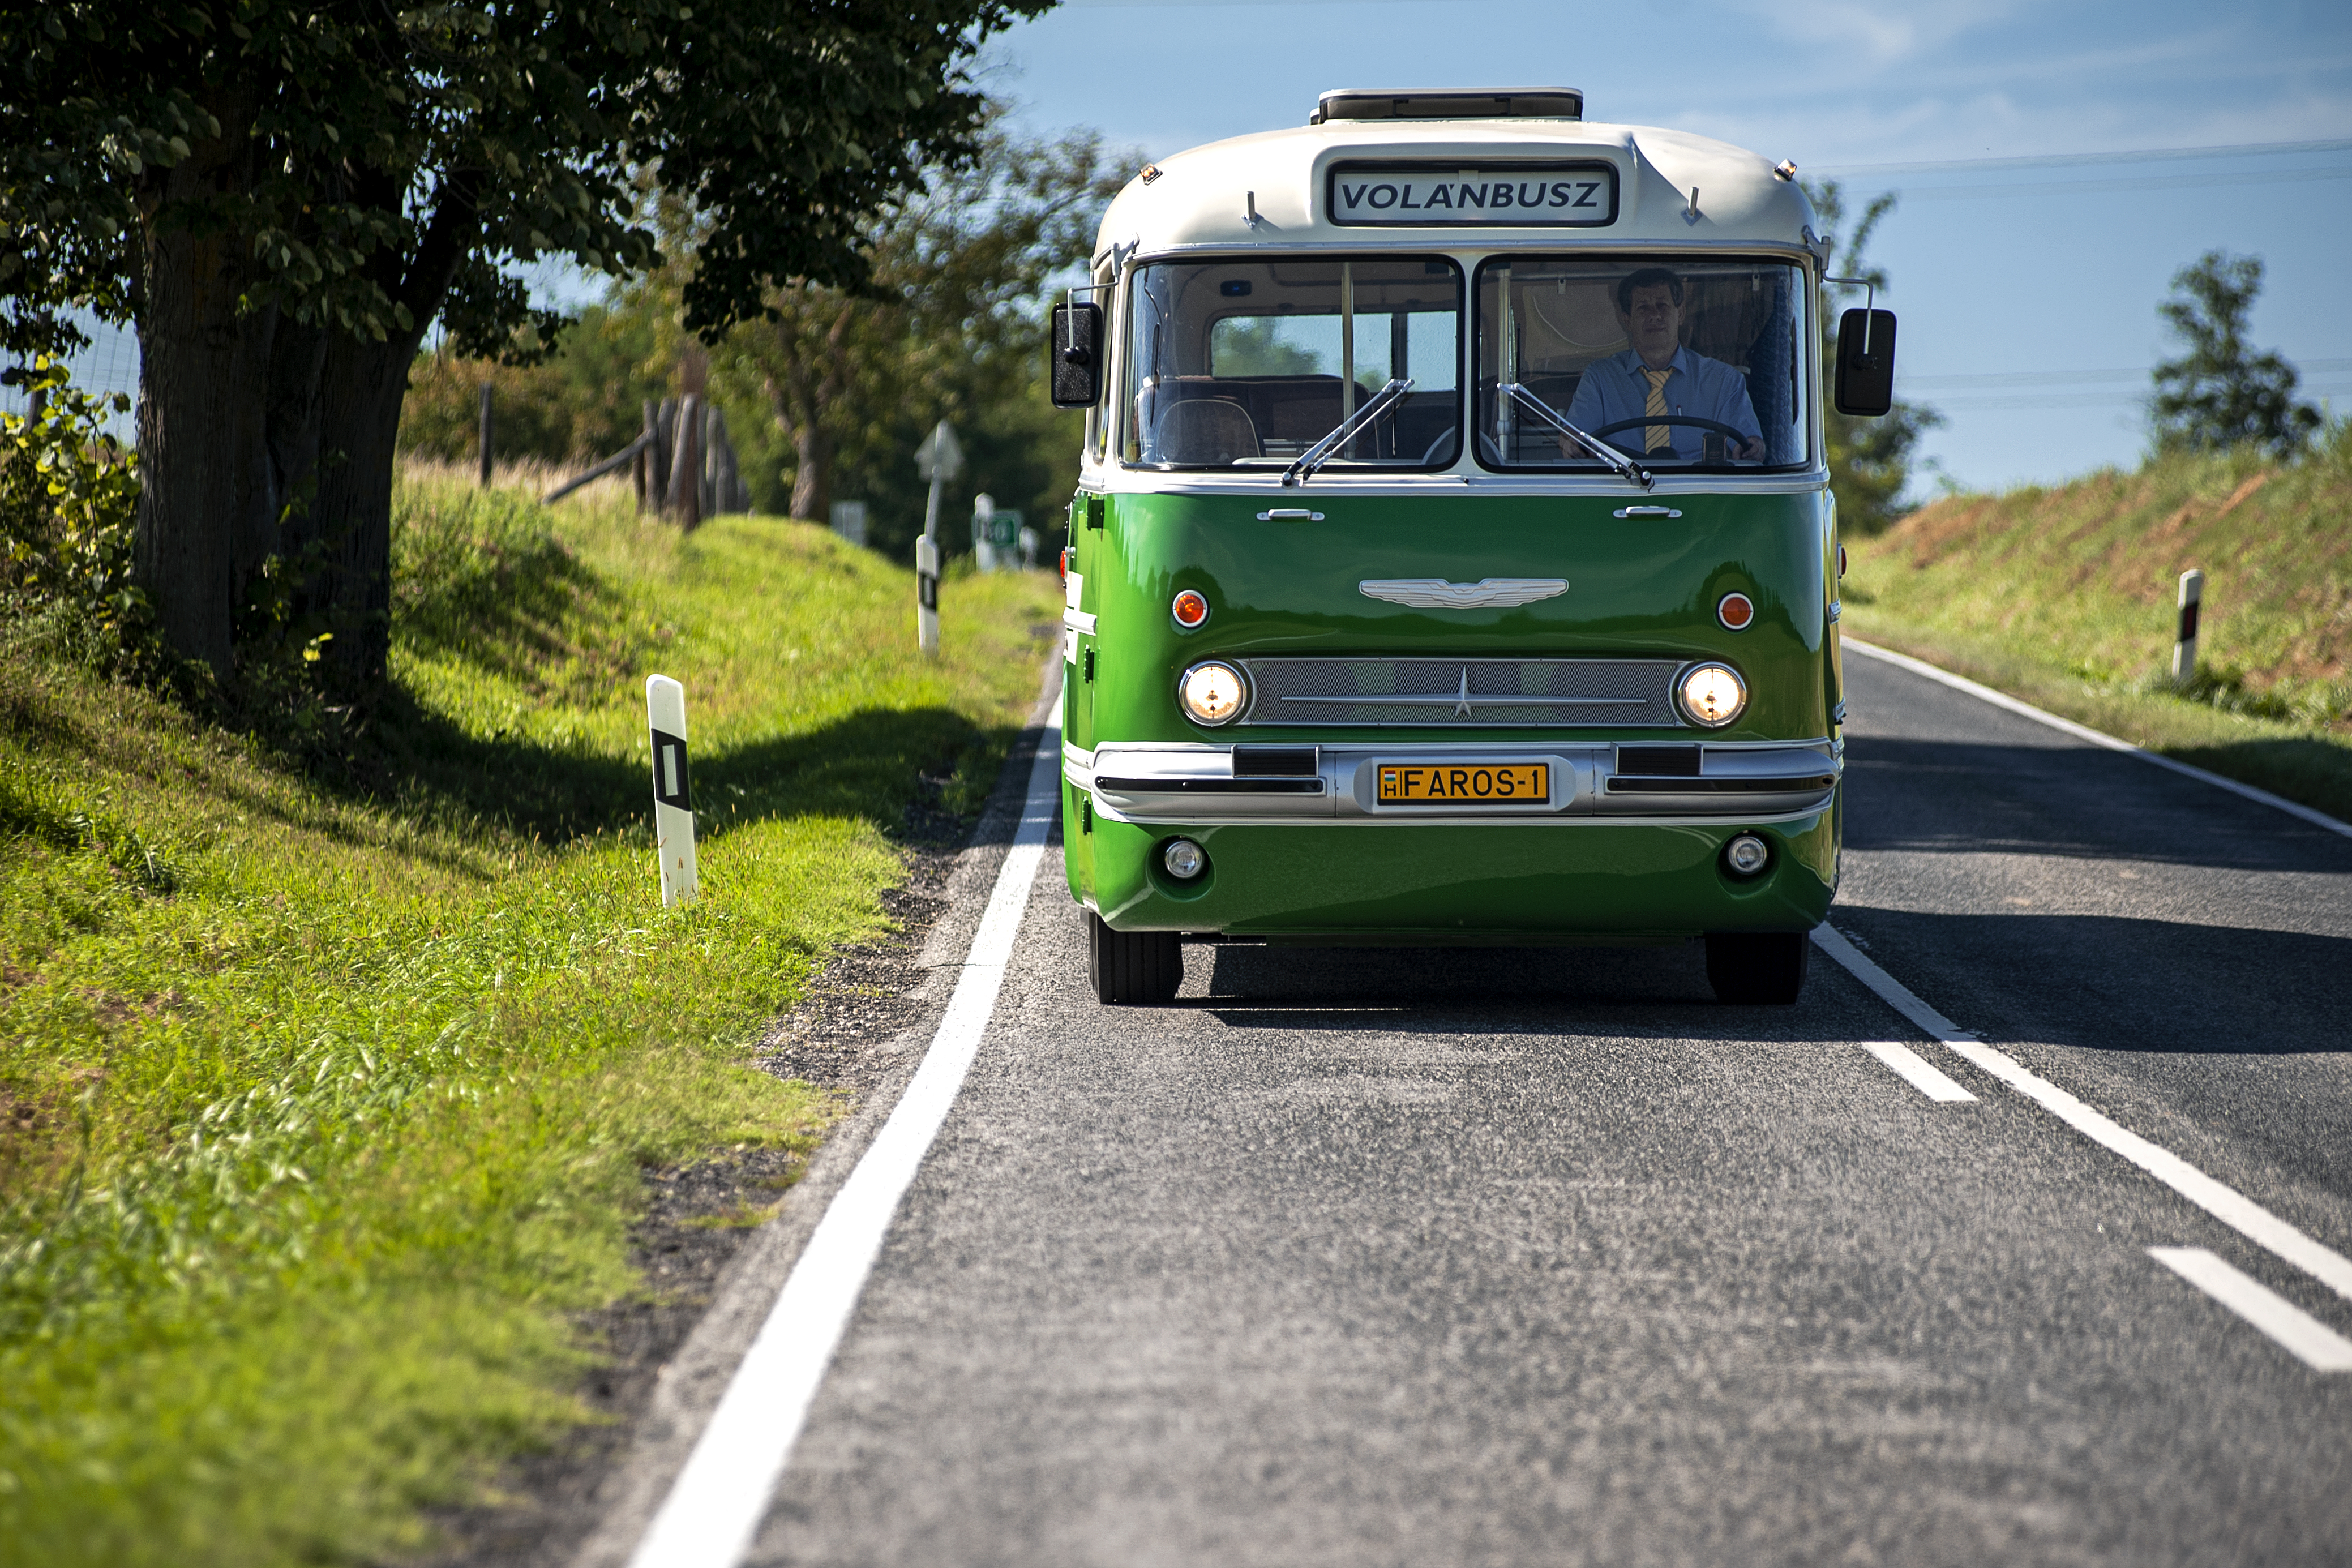 A képen egy retro, zöld színű ikarus 55 típusú autóbusz látható.